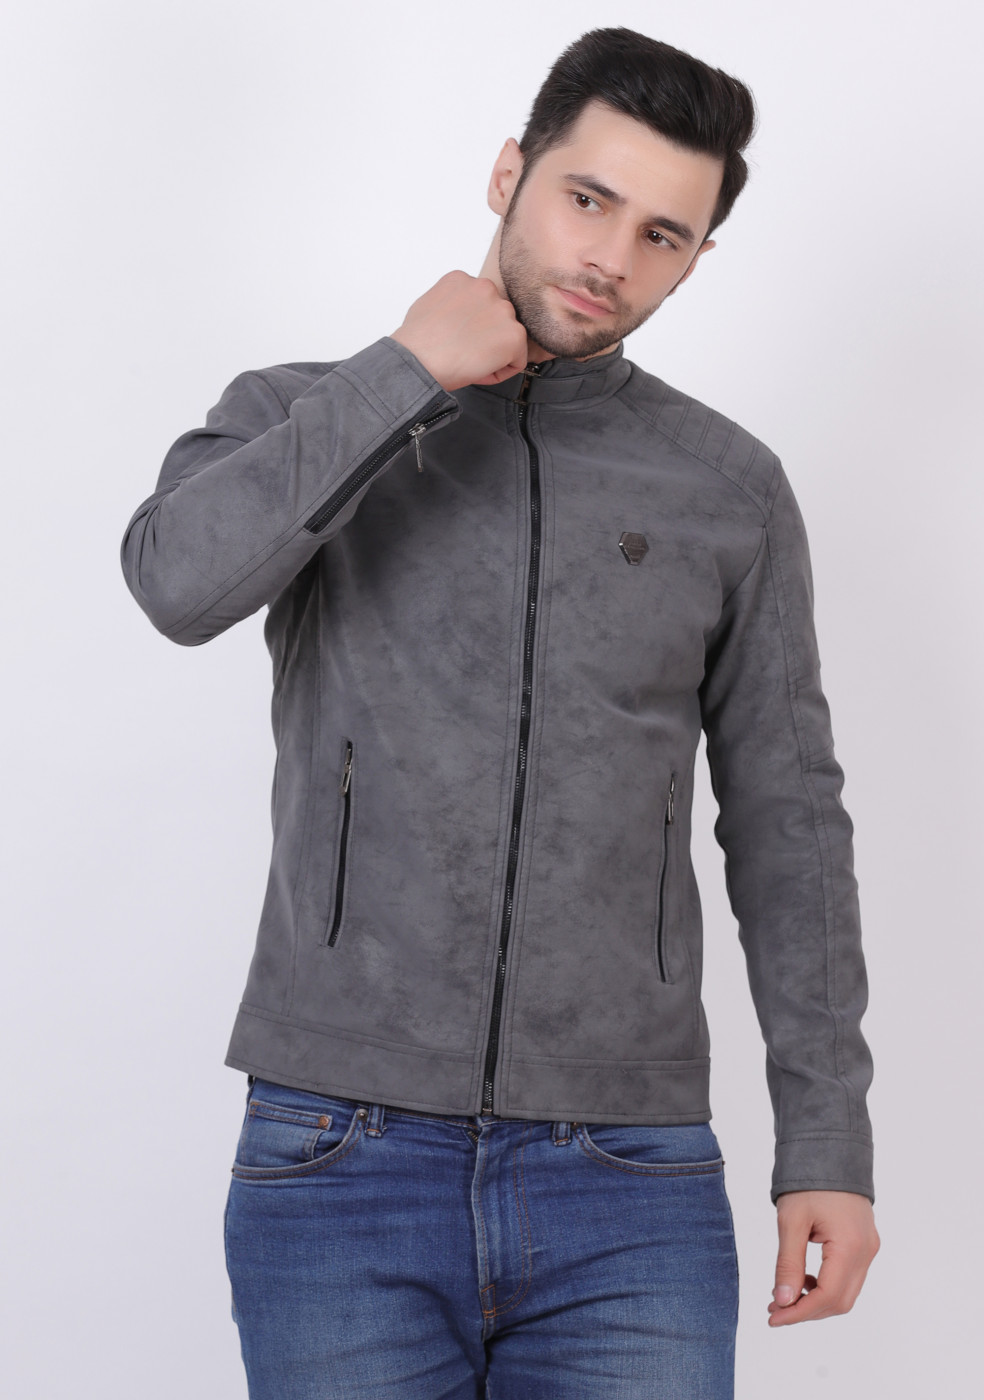 Men Stylish Gray Lather Jacket